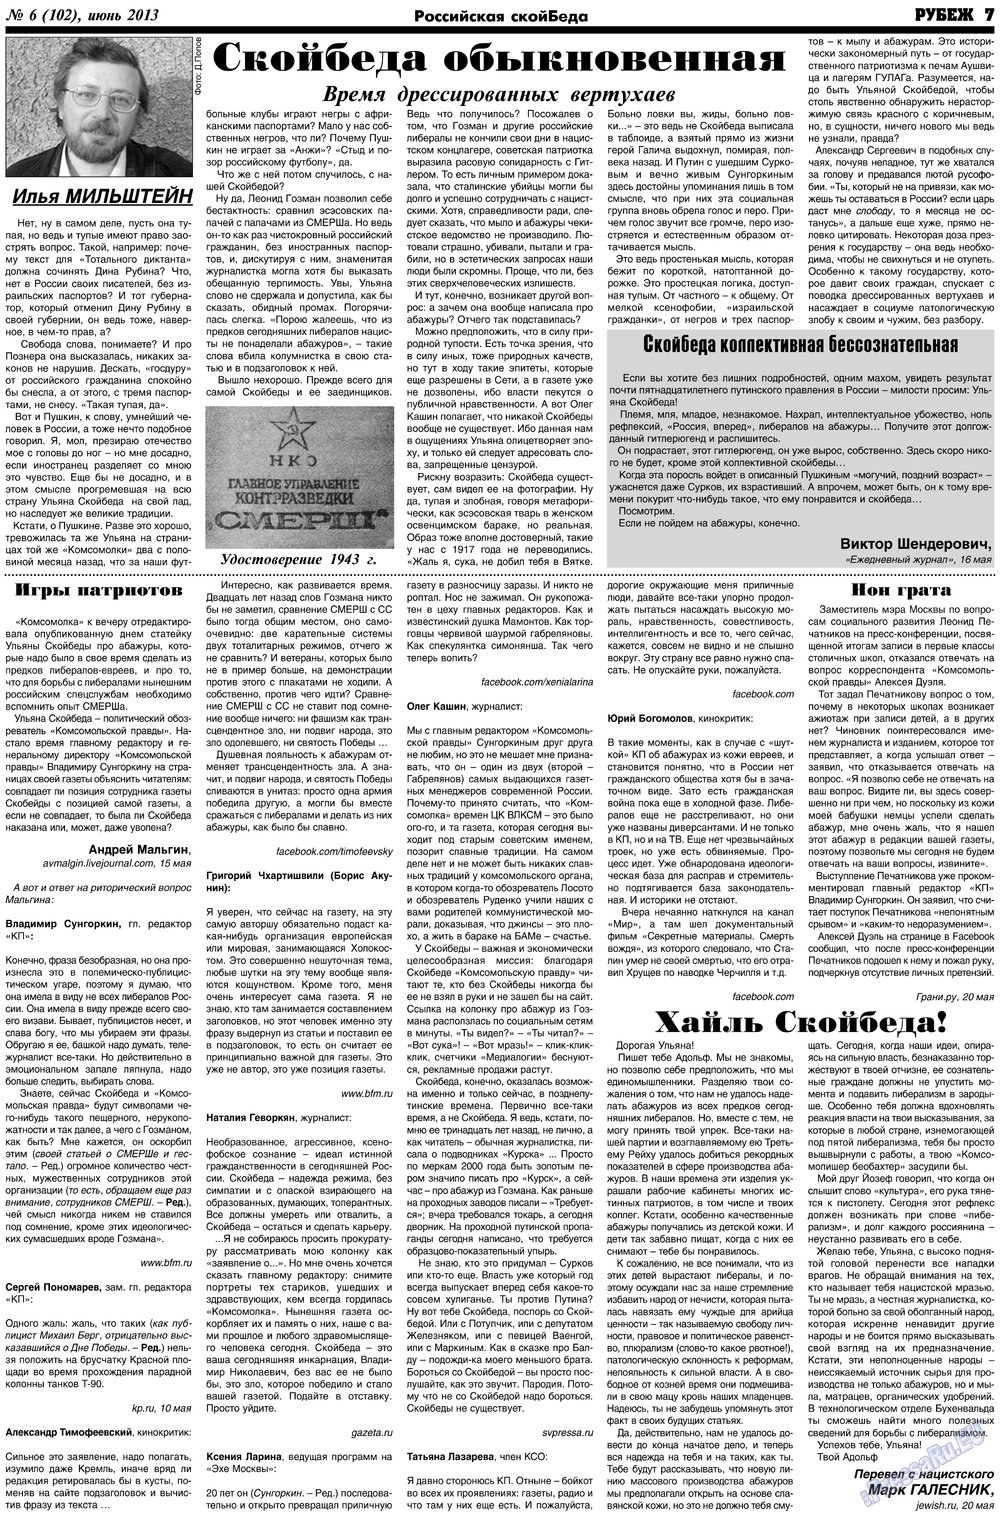 Рубеж (газета). 2013 год, номер 6, стр. 7